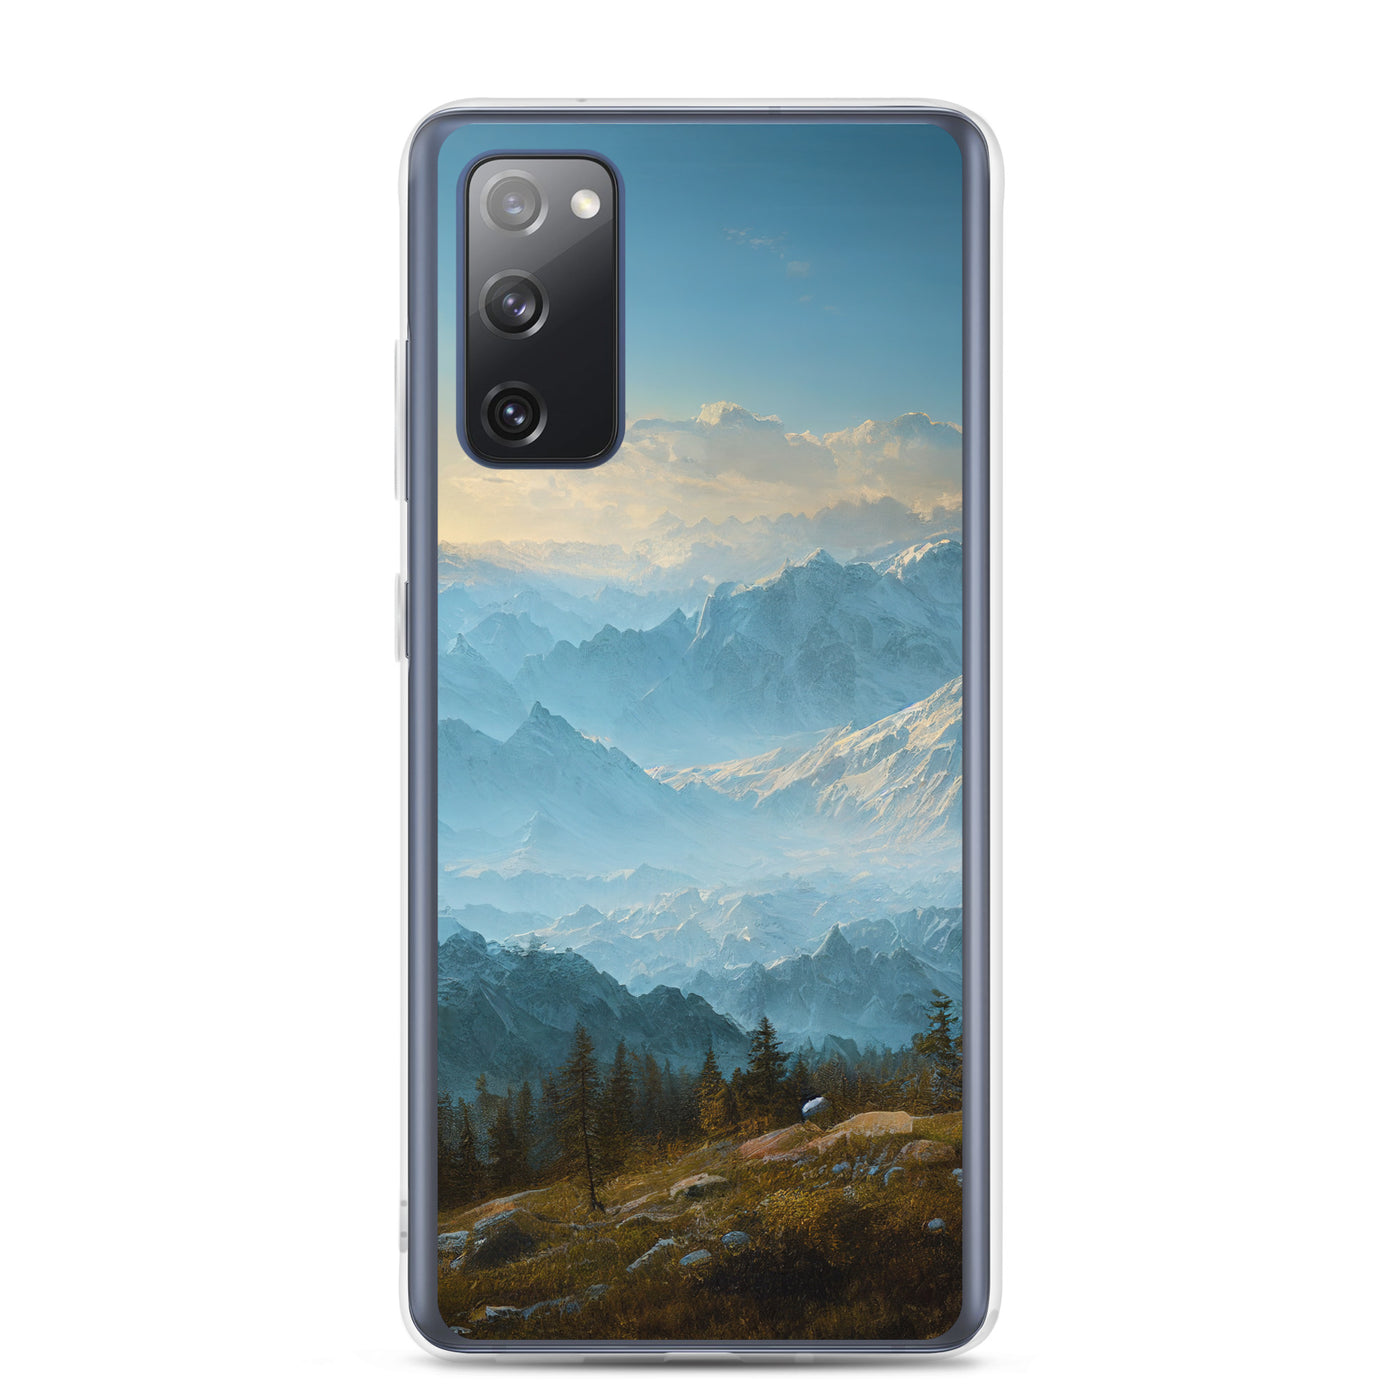 Schöne Berge mit Nebel bedeckt - Ölmalerei - Samsung Schutzhülle (durchsichtig) berge xxx Samsung Galaxy S20 FE